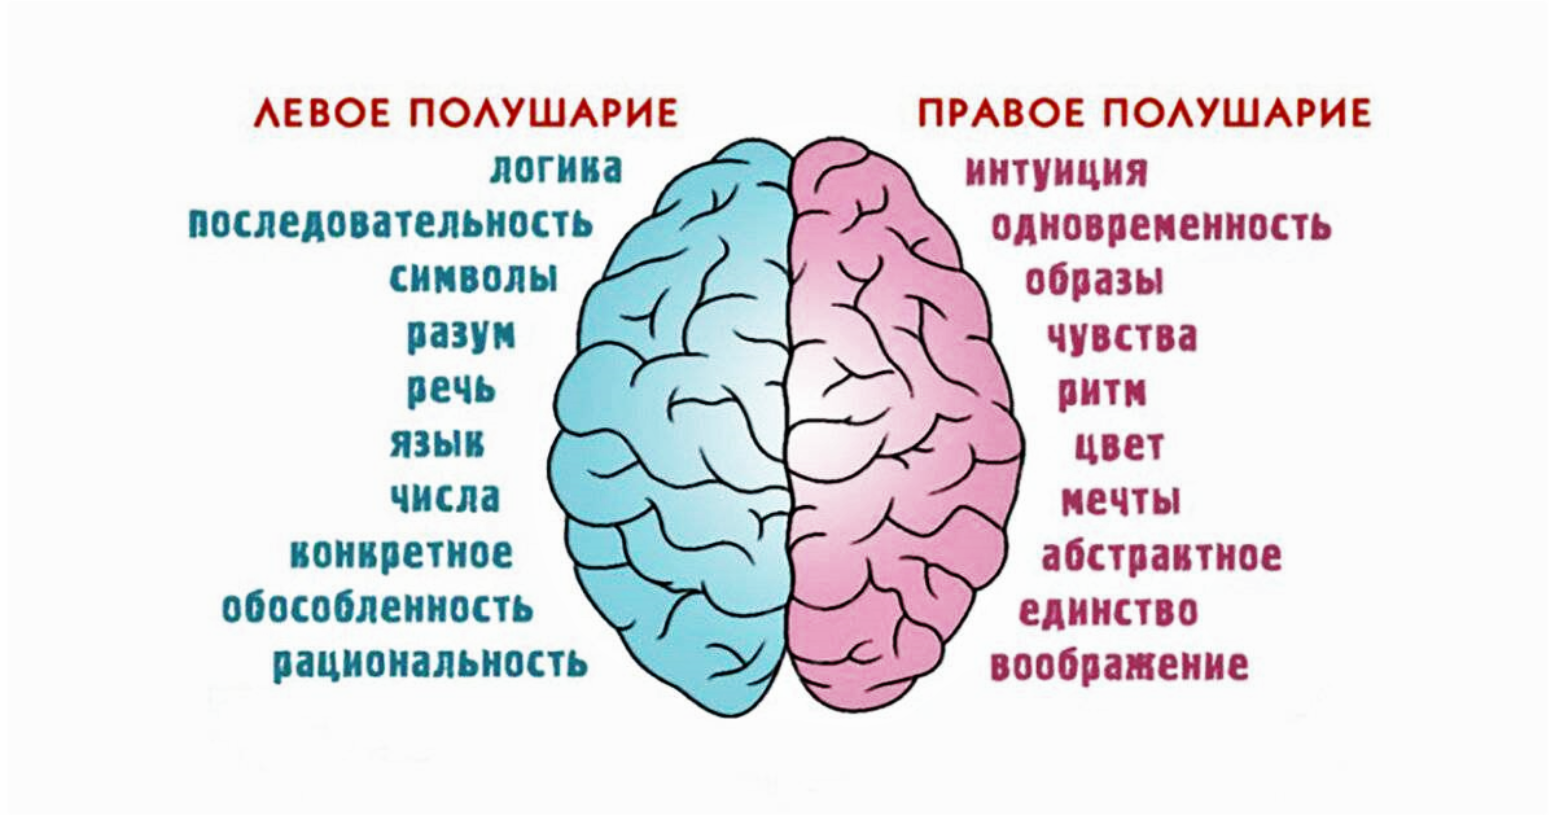 Расстройство полушарий. Полушария мозга девое т правое. За что отвечает правое полушарие. За что отвечают полушария головного мозга человека левое и правое. За какие процессы головного мозга отвечает правое полушарие.